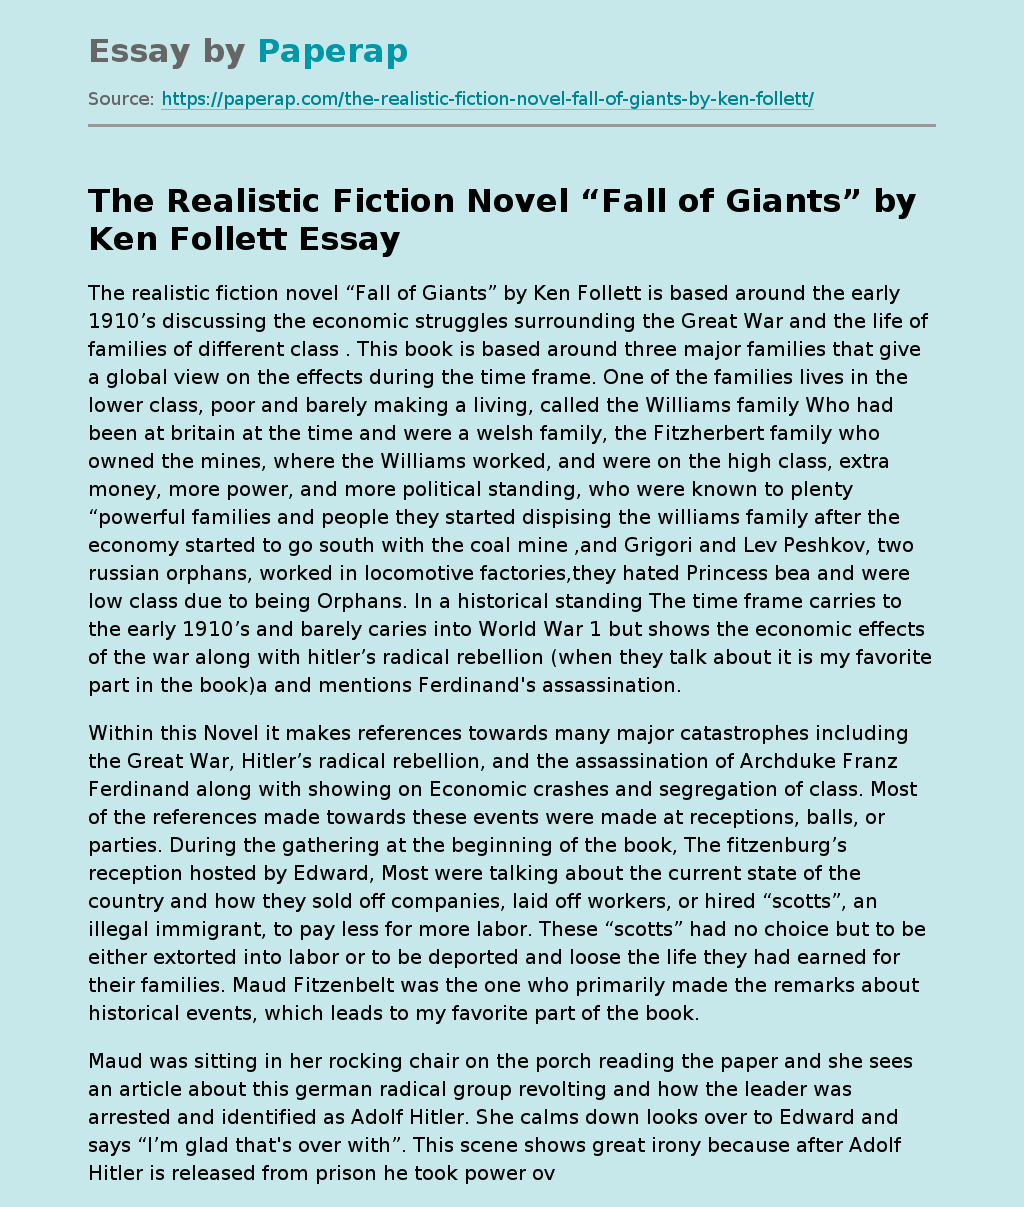 The Realistic Fiction Novel “Fall of Giants” by Ken Follett